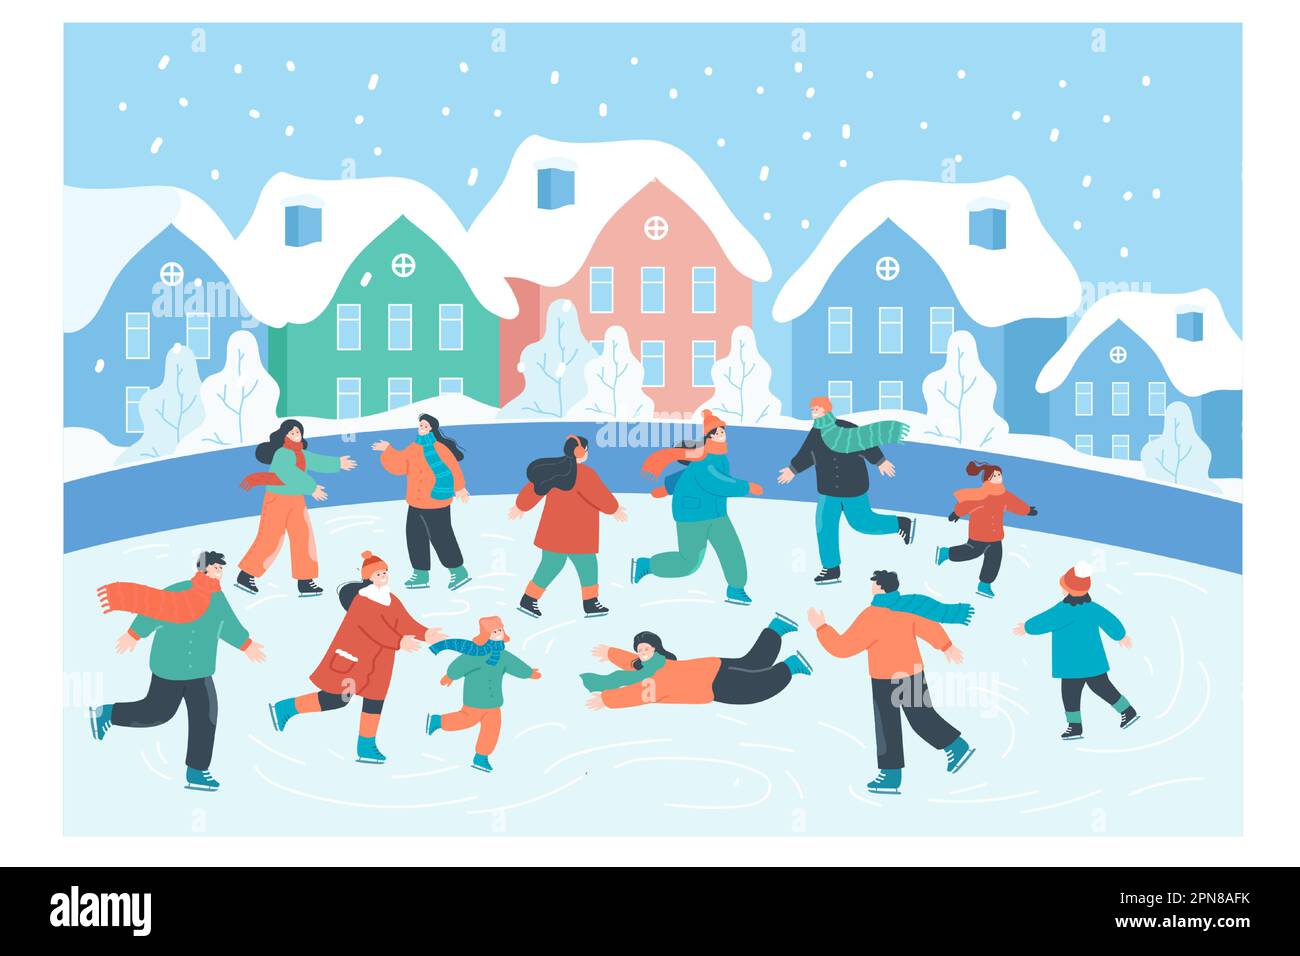 Les gens heureux patinant sur la patinoire dans le paysage de la ville avec des maisons Illustration de Vecteur